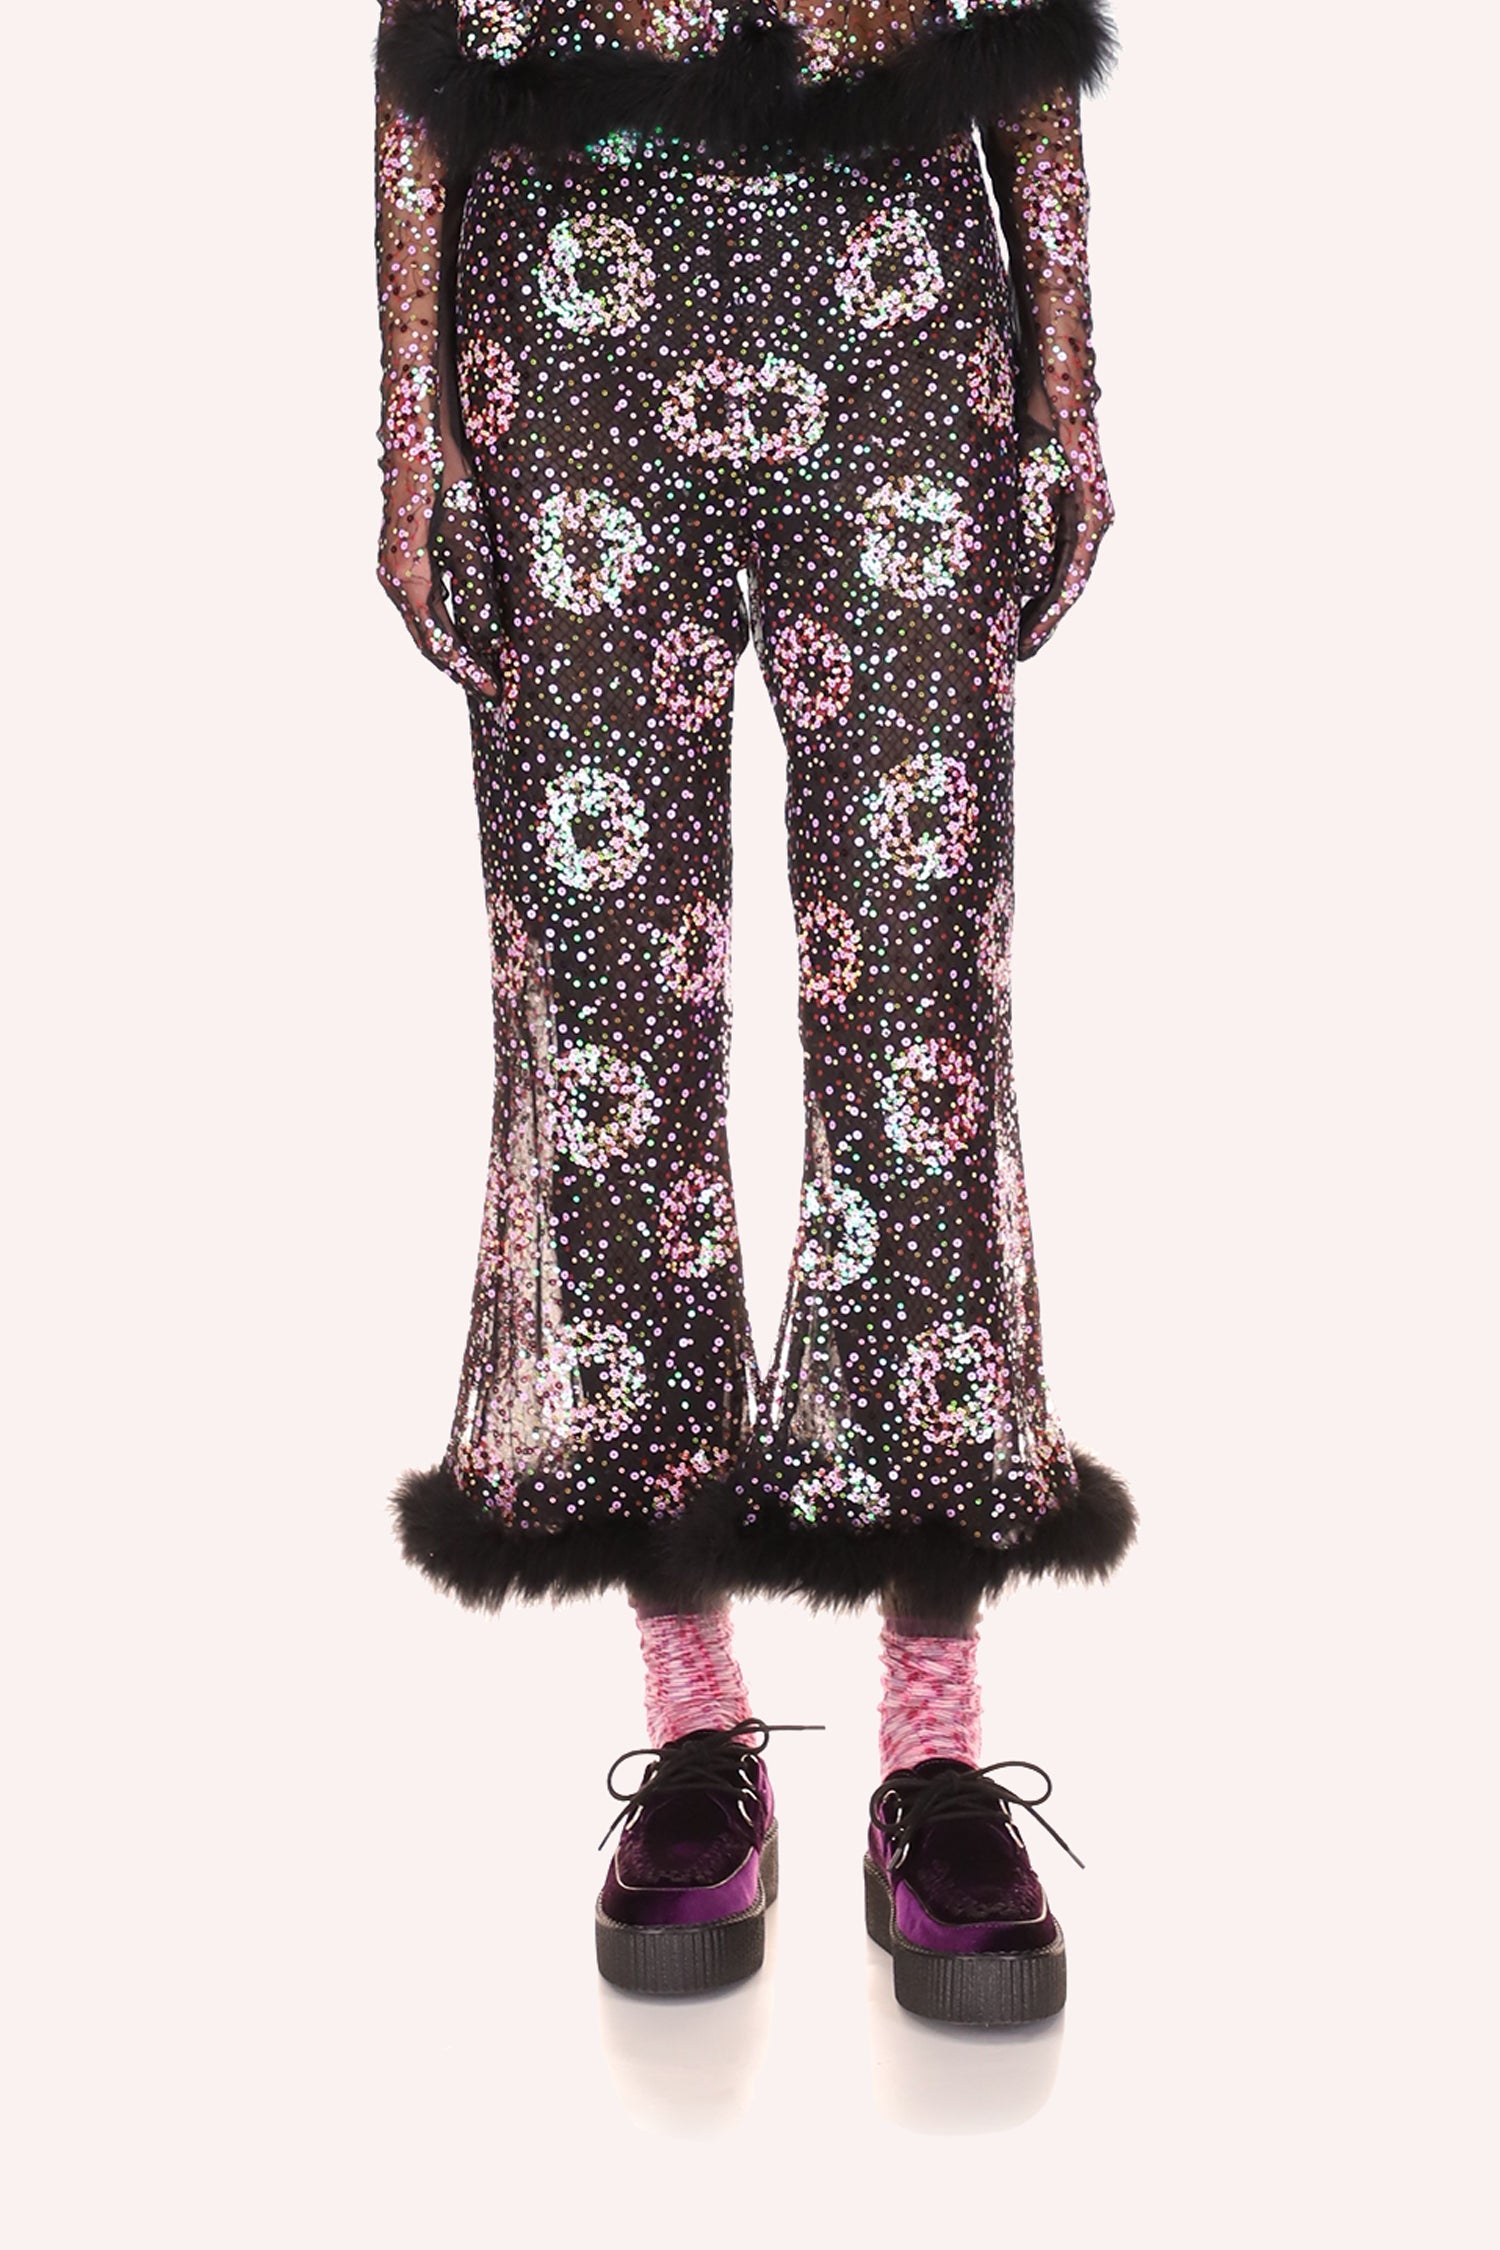 Sparkler Sequins Pants Lavender, above ankles long, bell-bottoms shape,  fluffy faux fur a bottom hem 